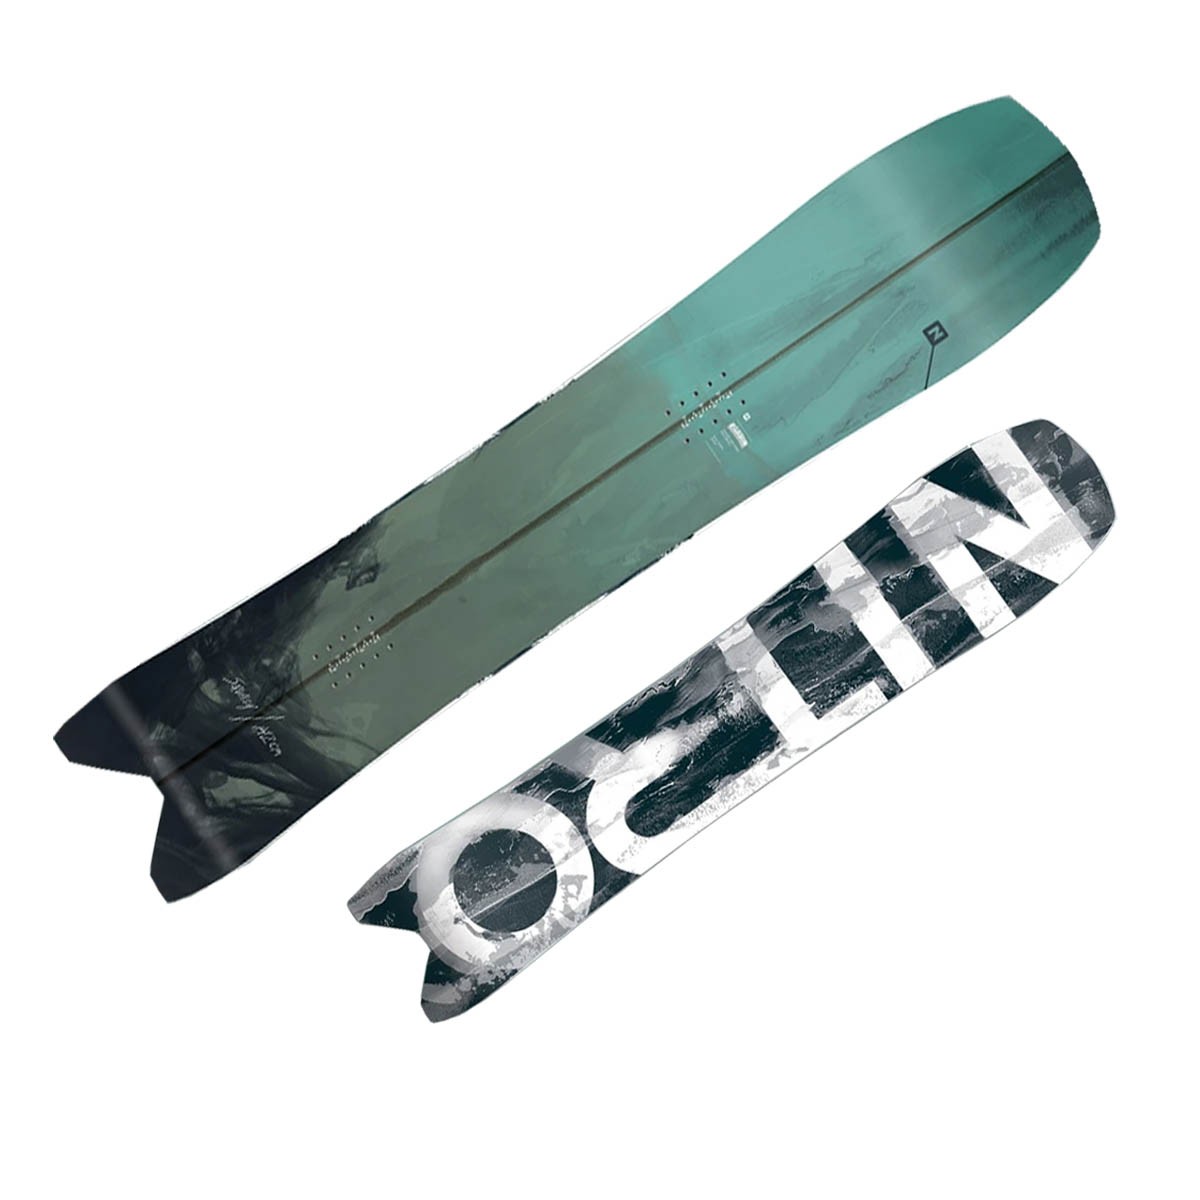  Snowboard Nitro Squash (Colore: verde acqua, Taglia: 137) 